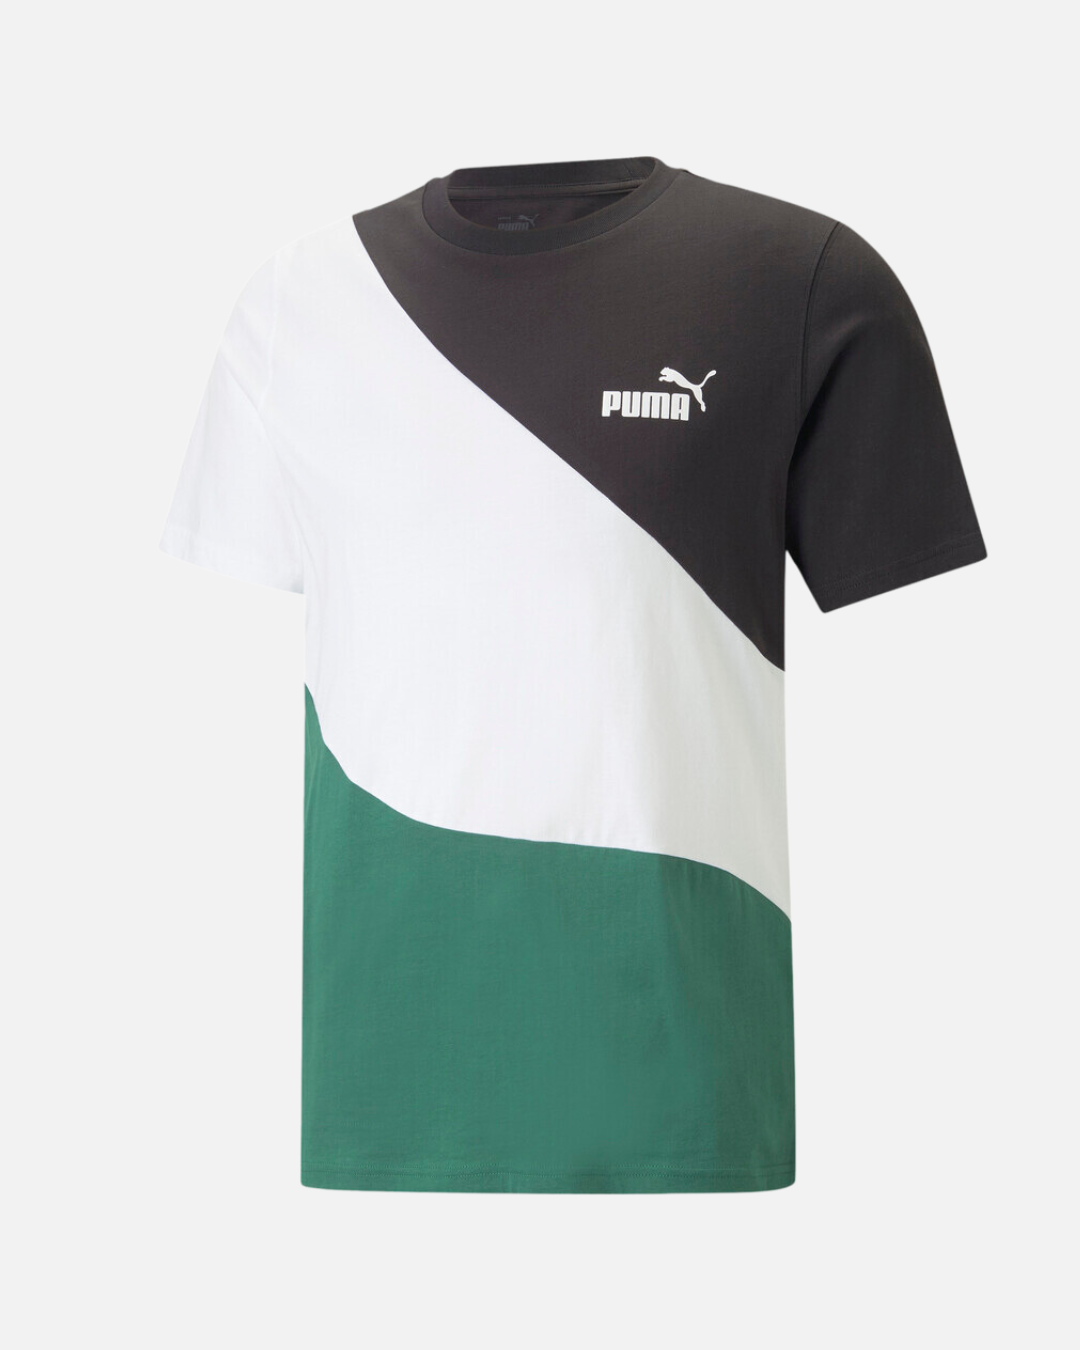 T-shirt Puma Power - Noir/Blanc/Vert